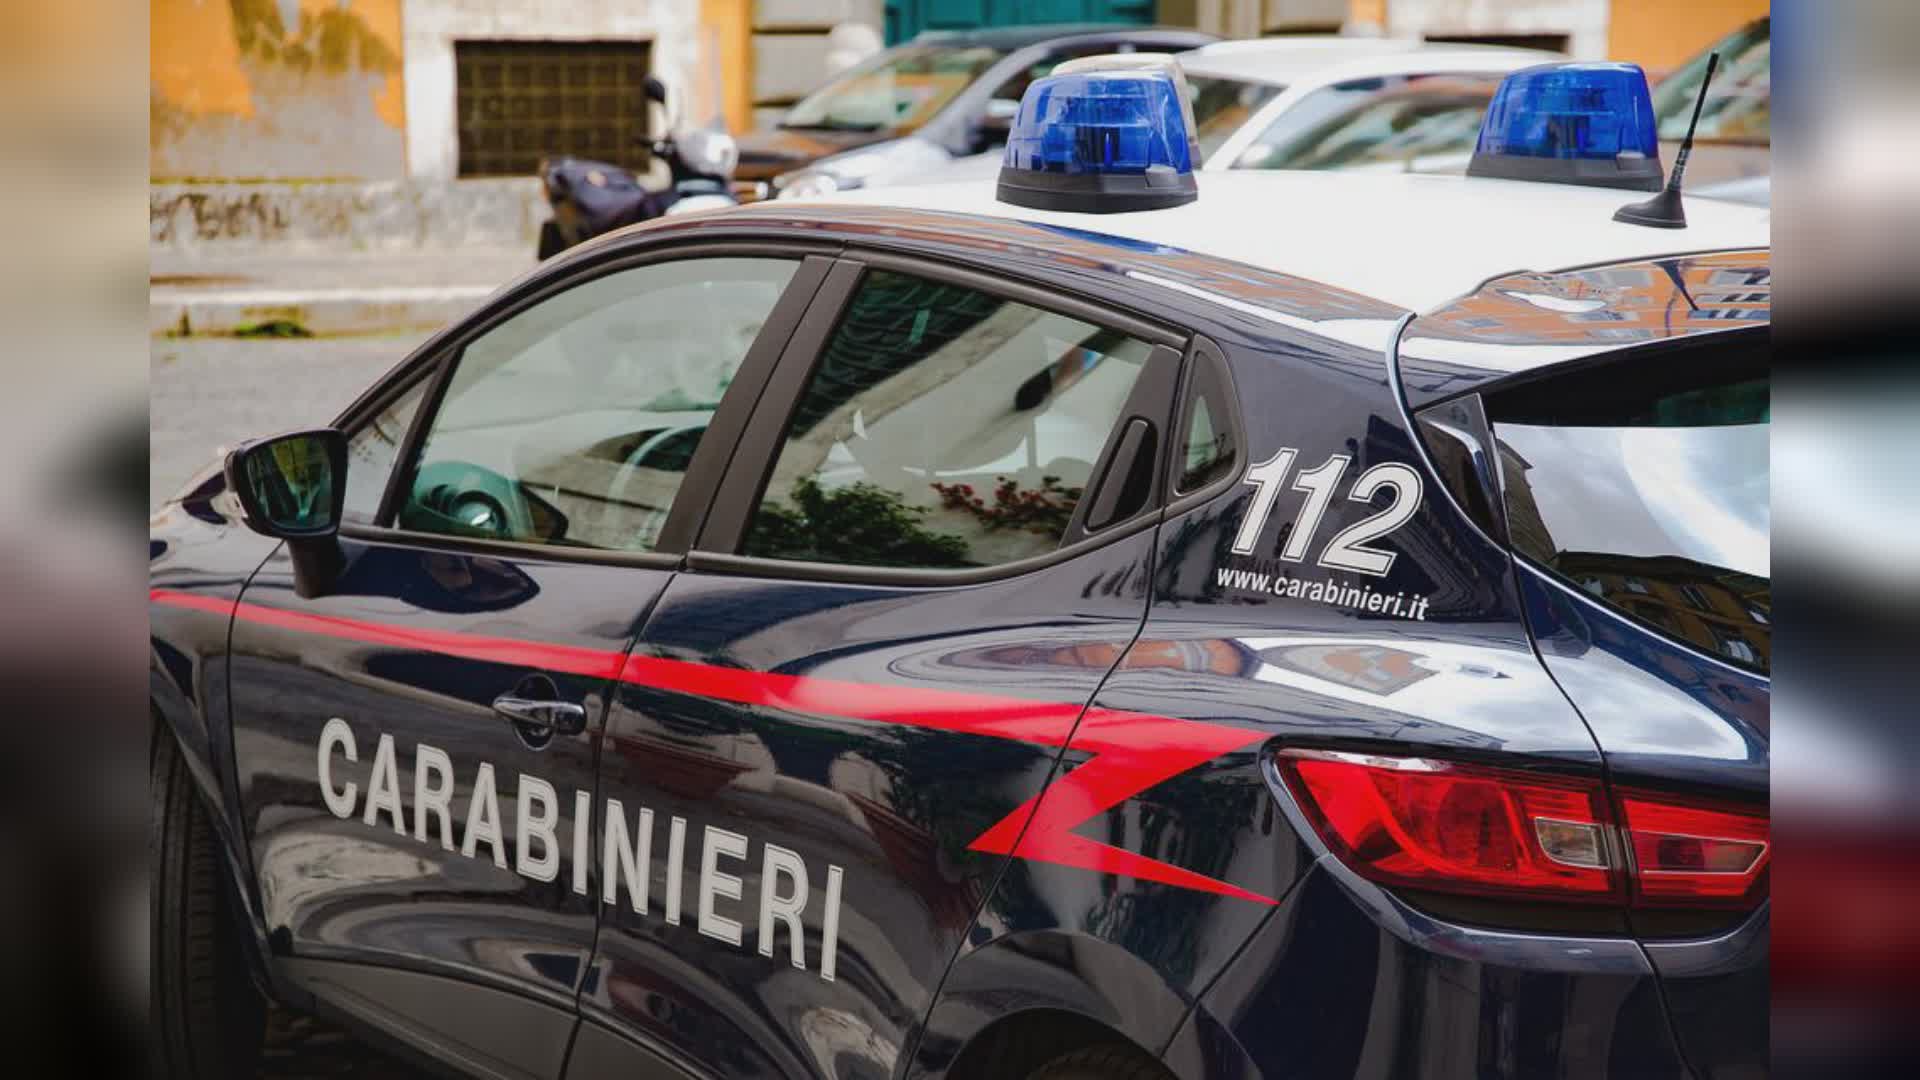 Cliente resta chiusa in pizzeria, liberata dai carabinieri.